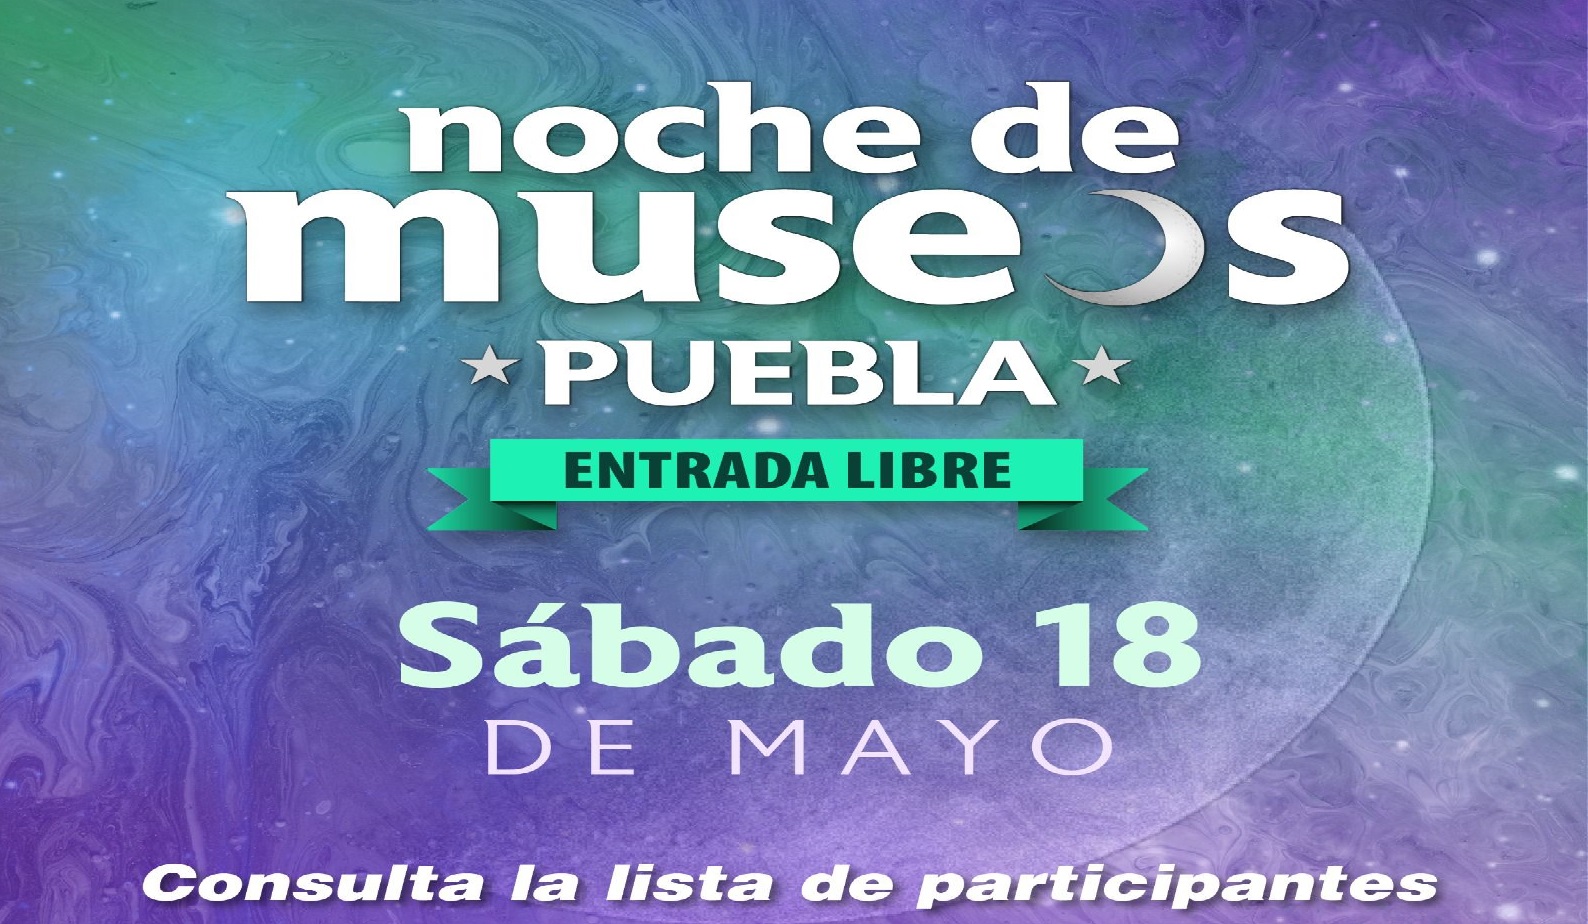 El sábado 18 de mayo será la quinta edición de Noche de Museos